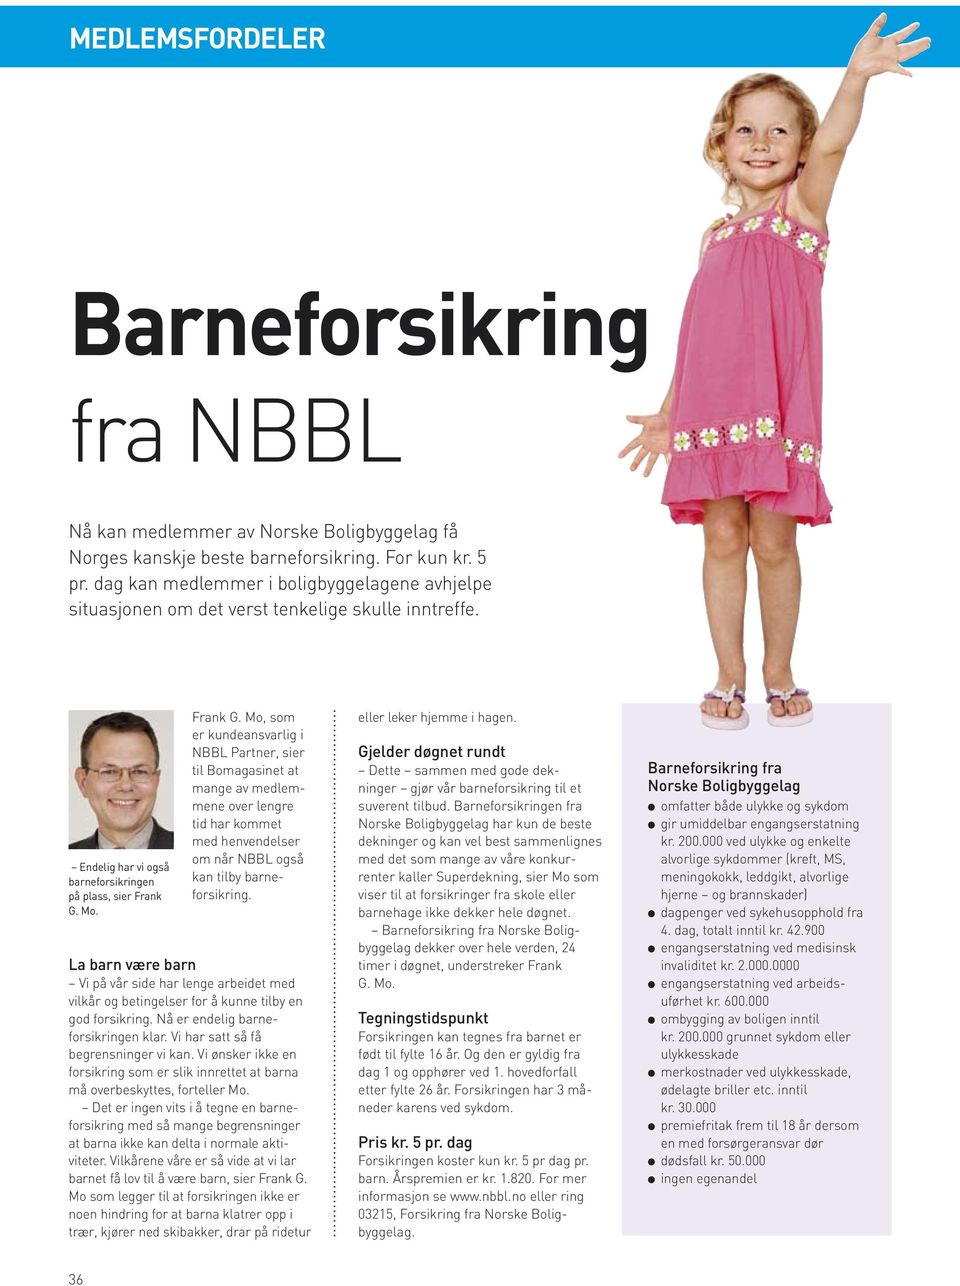 Mo. Frank G. Mo, som er kundeansvarlig i NBBL Partner, sier til Bomagasinet at mange av medlemmene over lengre tid har kommet med henvendelser om når NBBL også kan tilby barneforsikring.